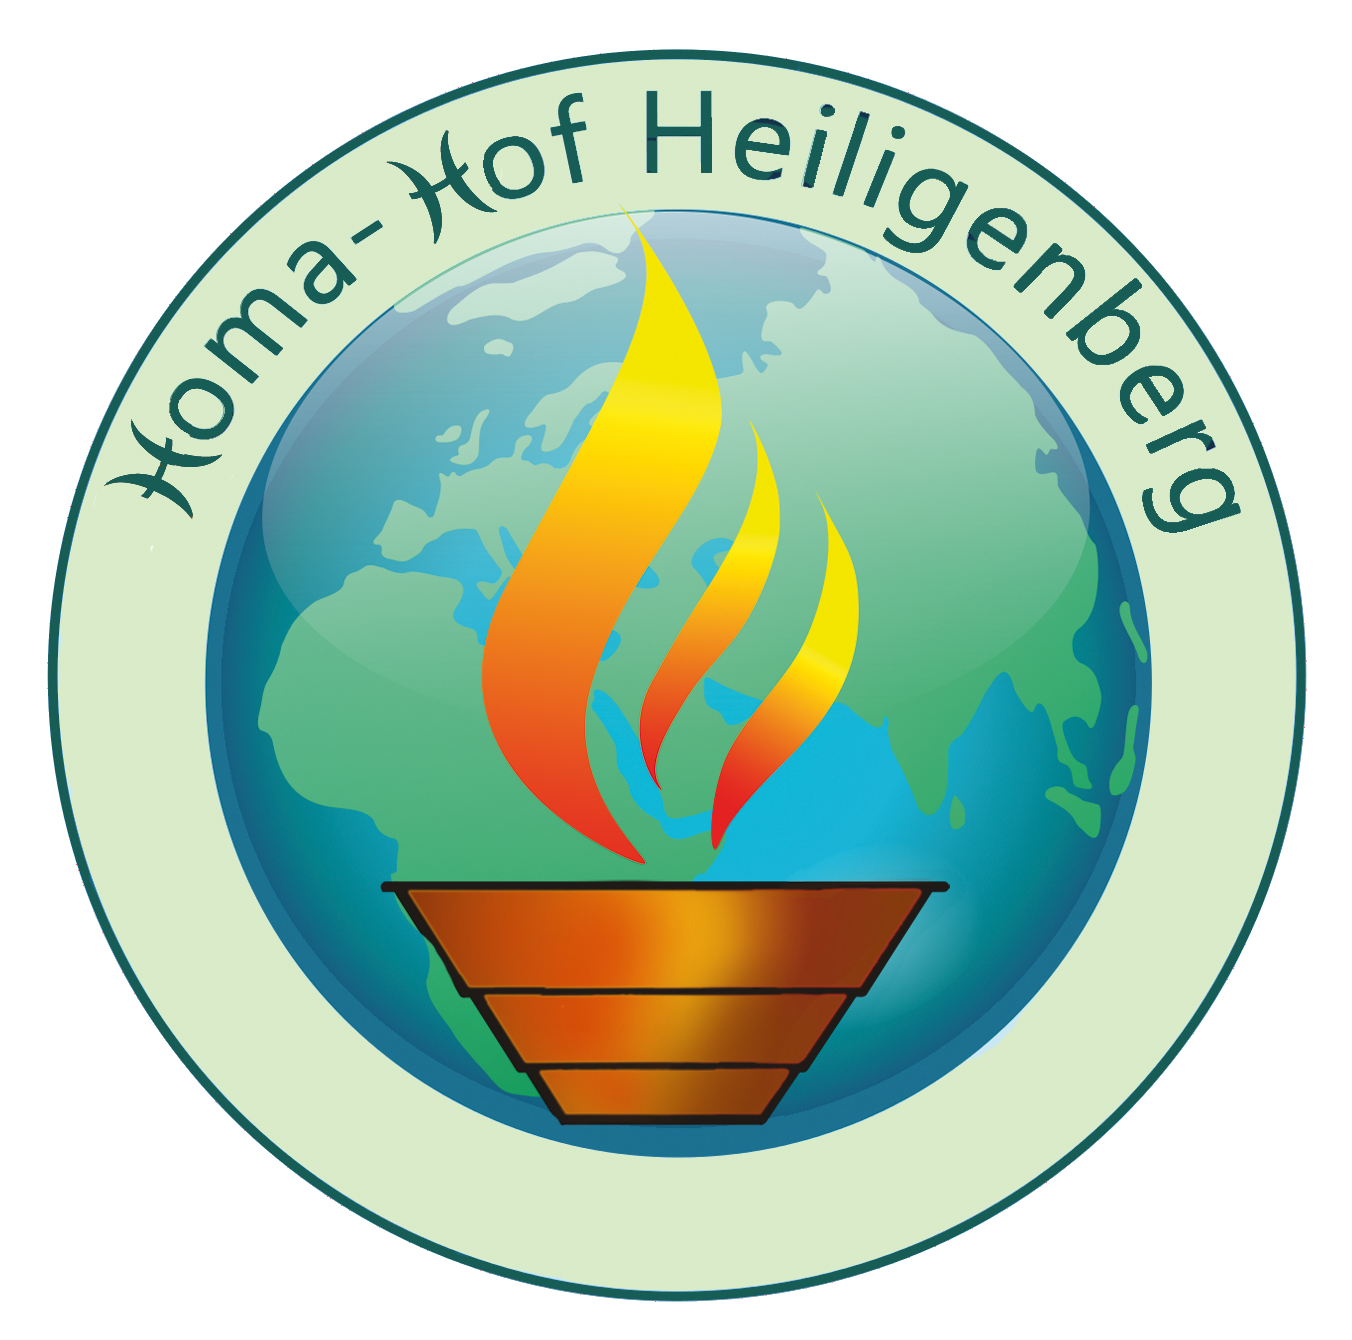 Homa-Hof Heiligenberg, Logo rund